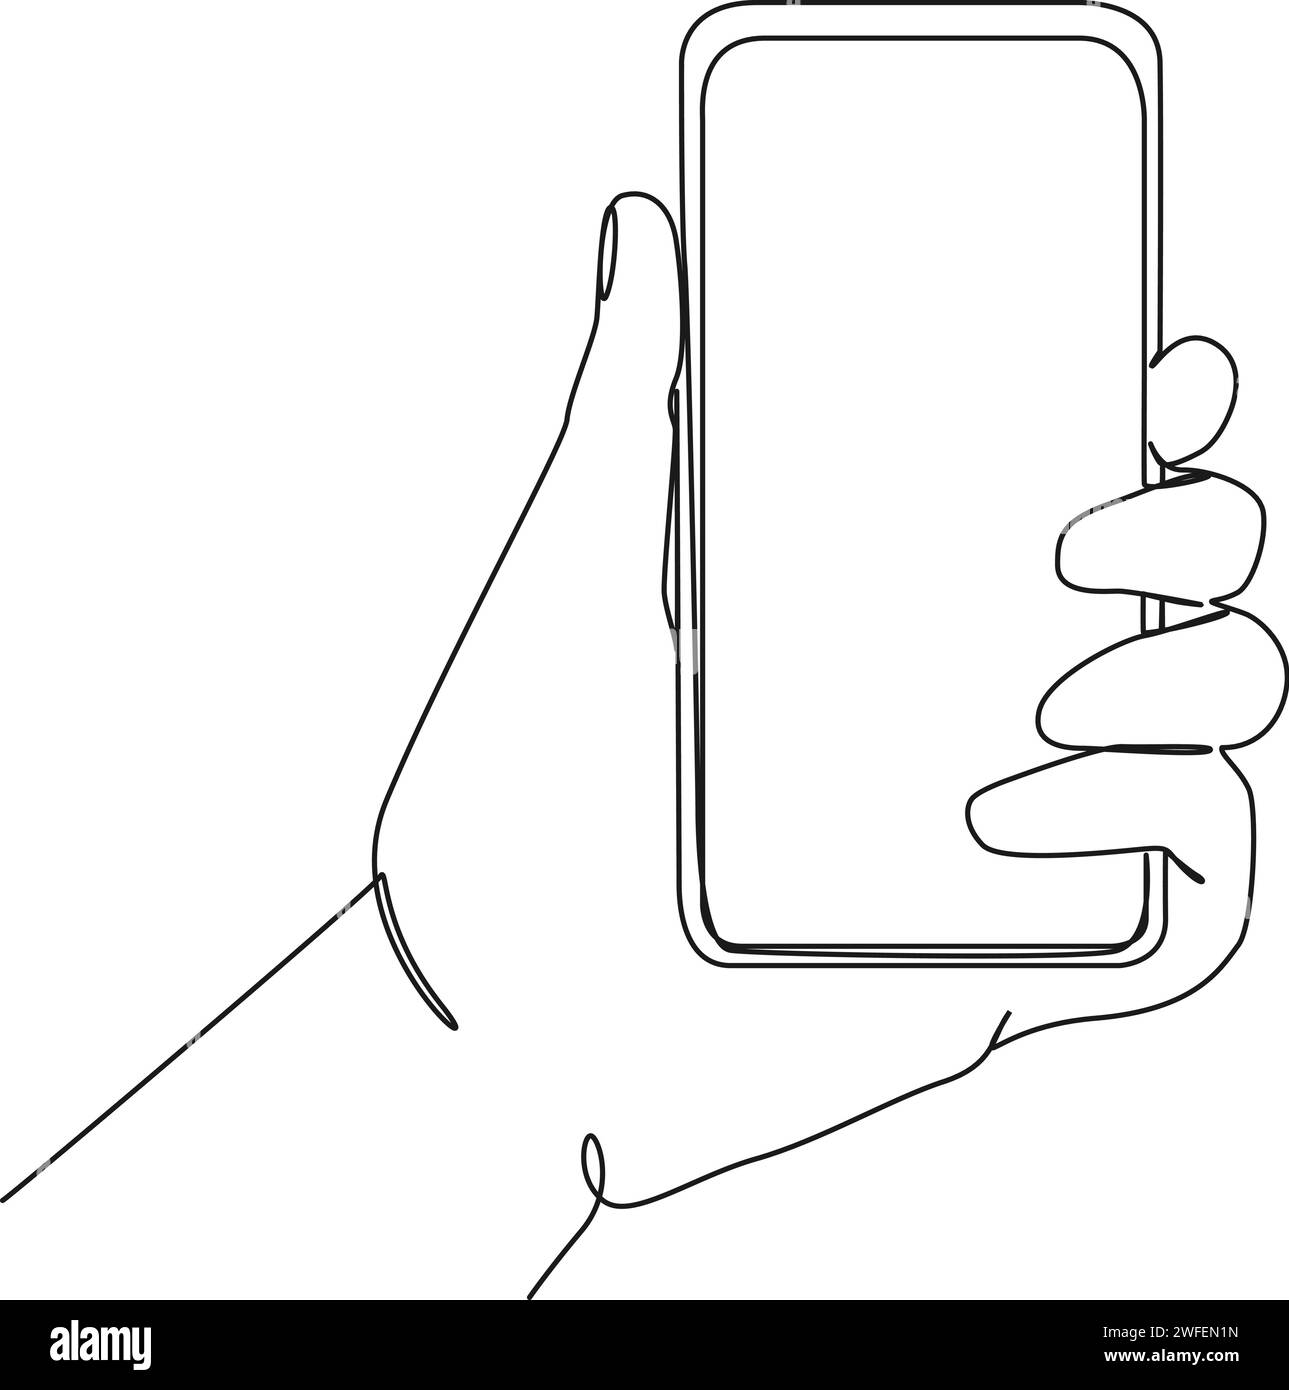 disegno continuo a riga singola di uno smartphone con impugnatura, illustrazione vettoriale line art Illustrazione Vettoriale